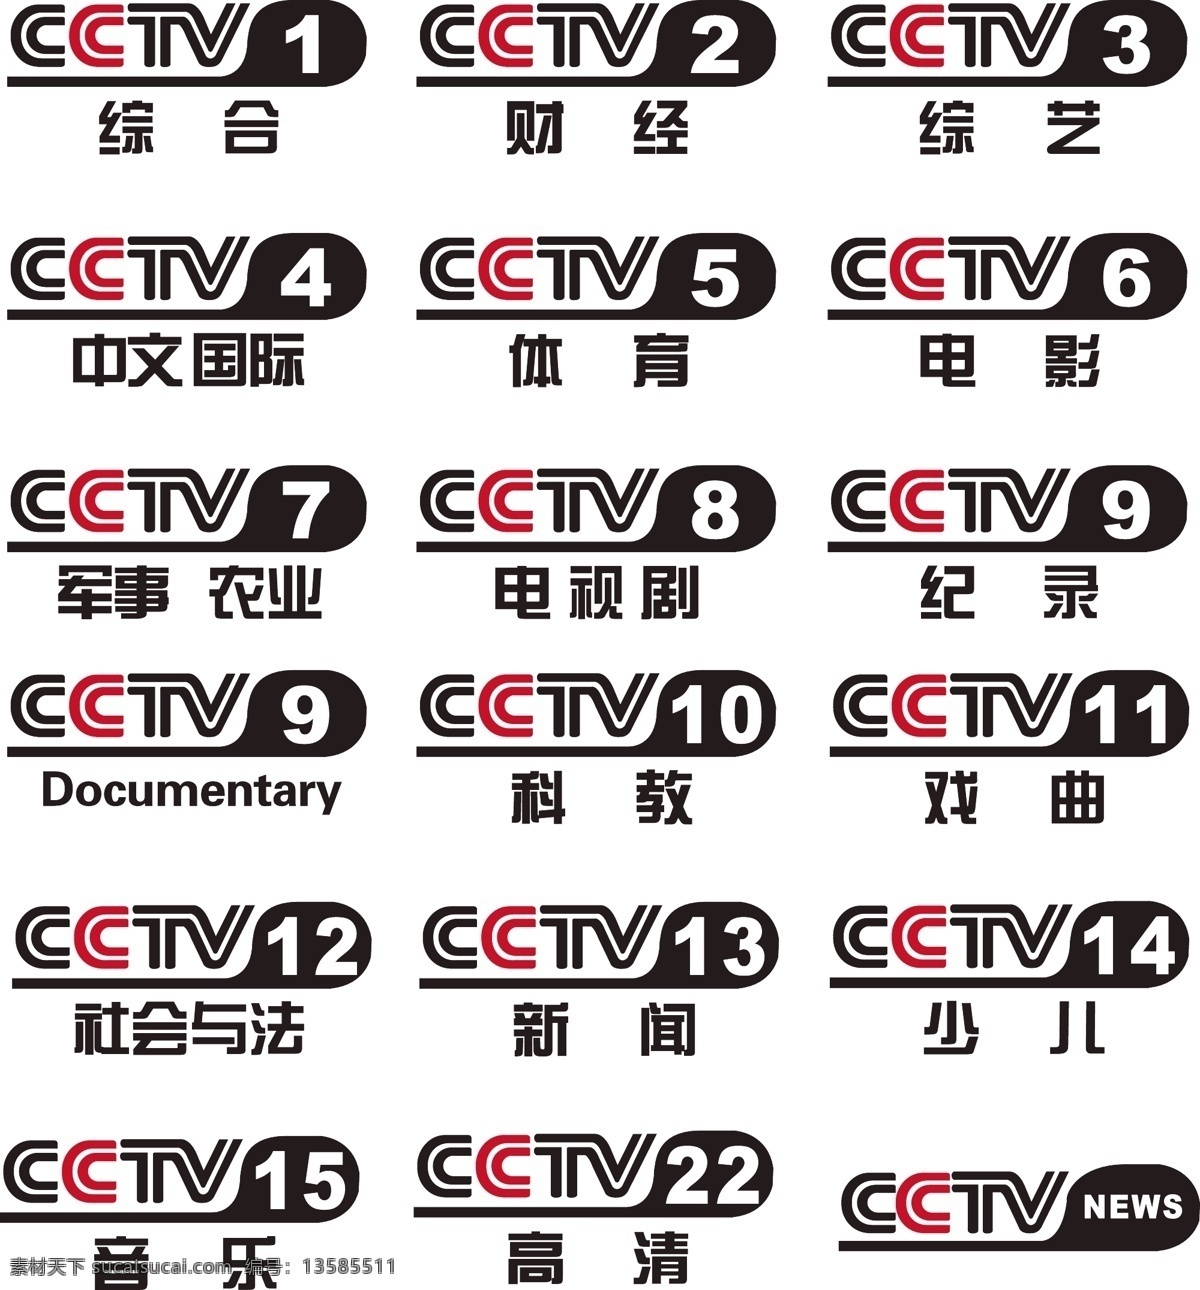 央视台标 cctv 台标 版 中央电视台 央视 视 频道 公共标识标志 标识标志图标 矢量